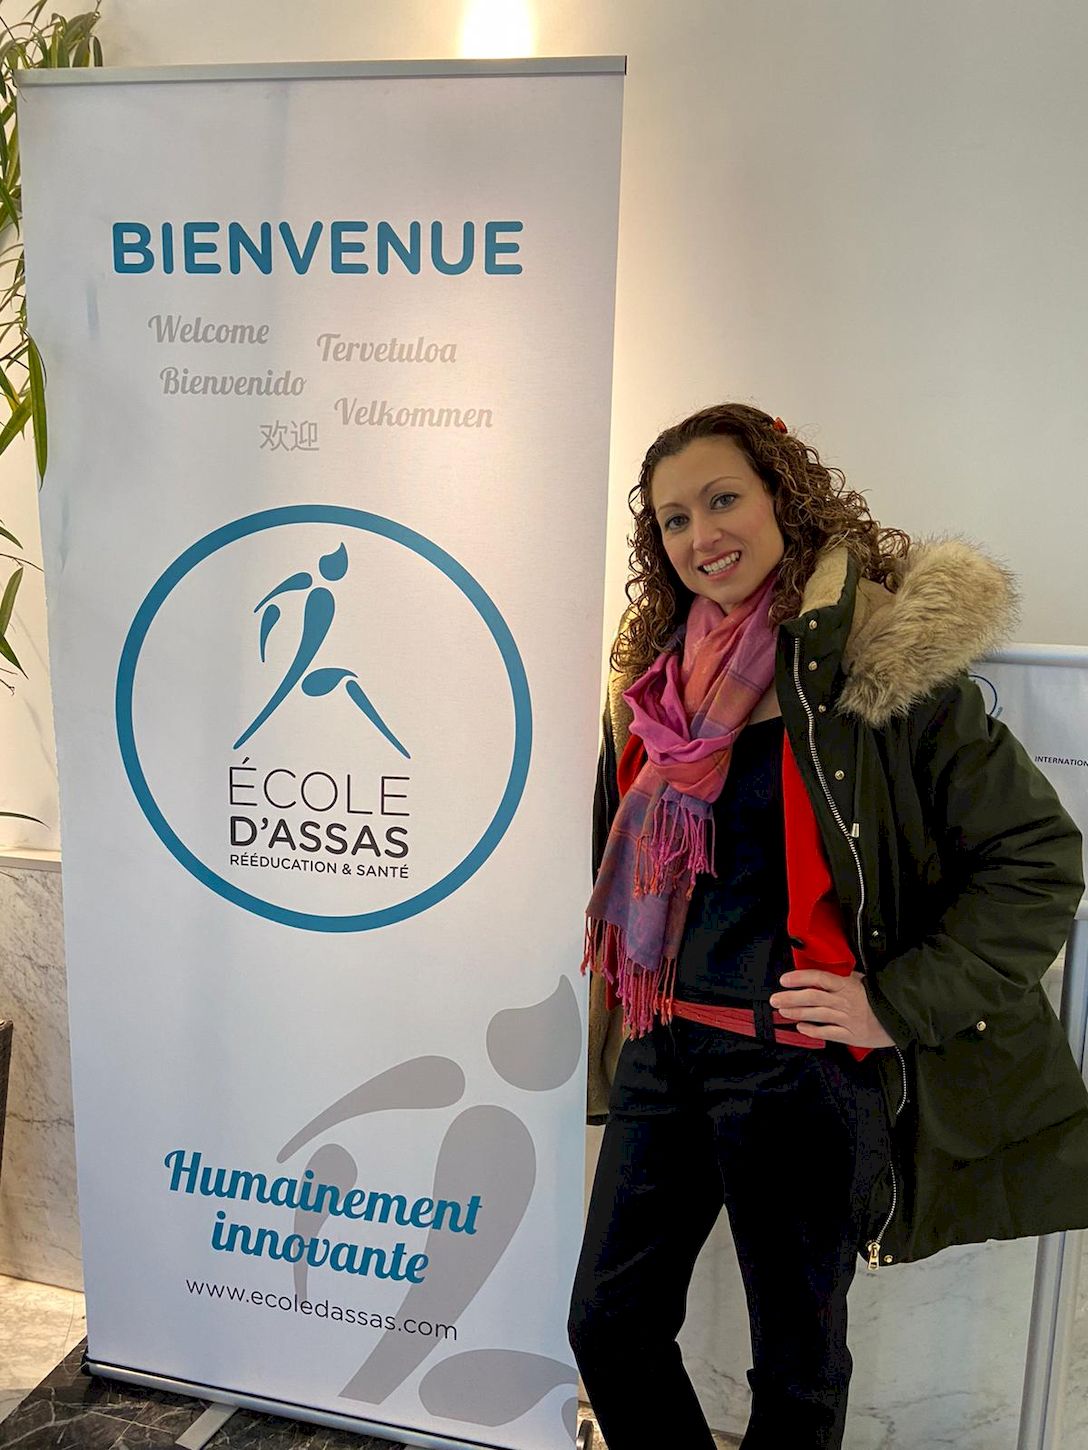 Asistimos a la Semana Internacional de Fisioterapia en París